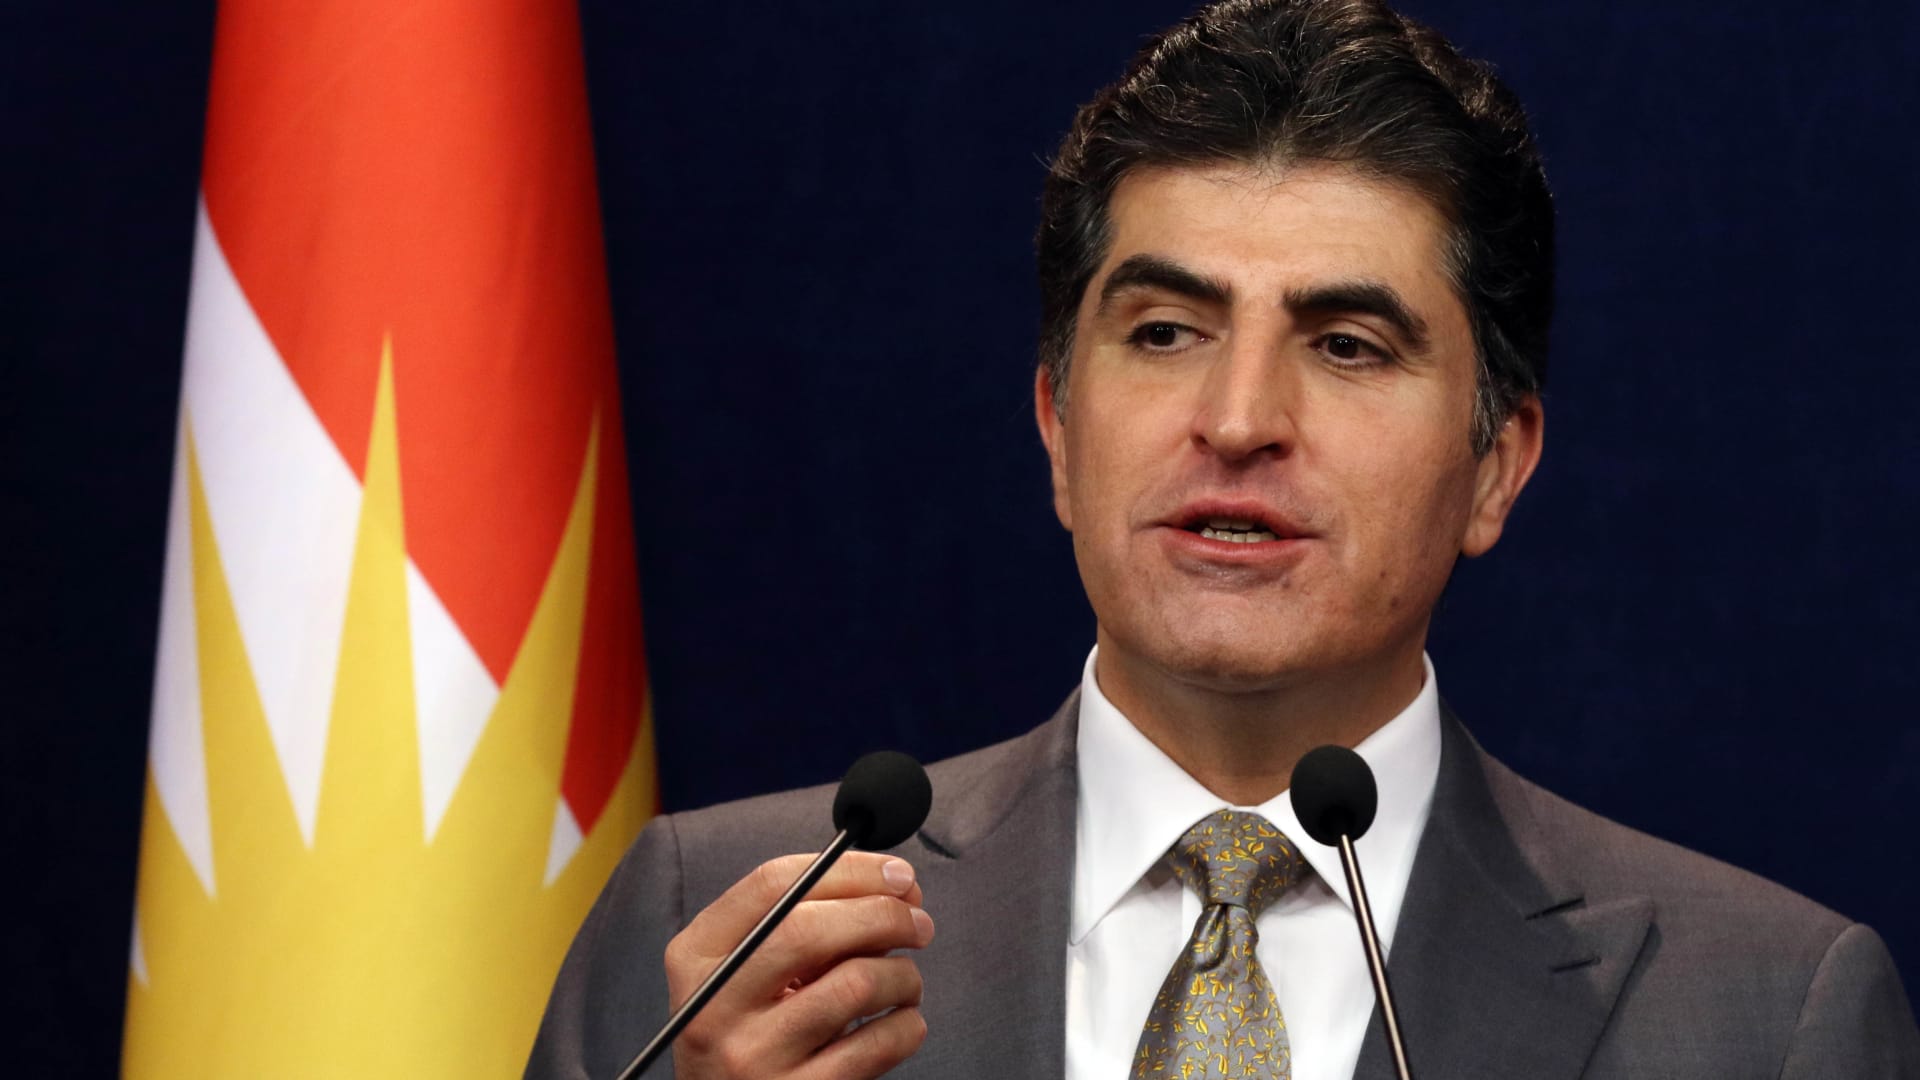 ممثل إقليم كردستان بلندن: هل هكذا يُكافأ الأكراد لقتال داعش؟